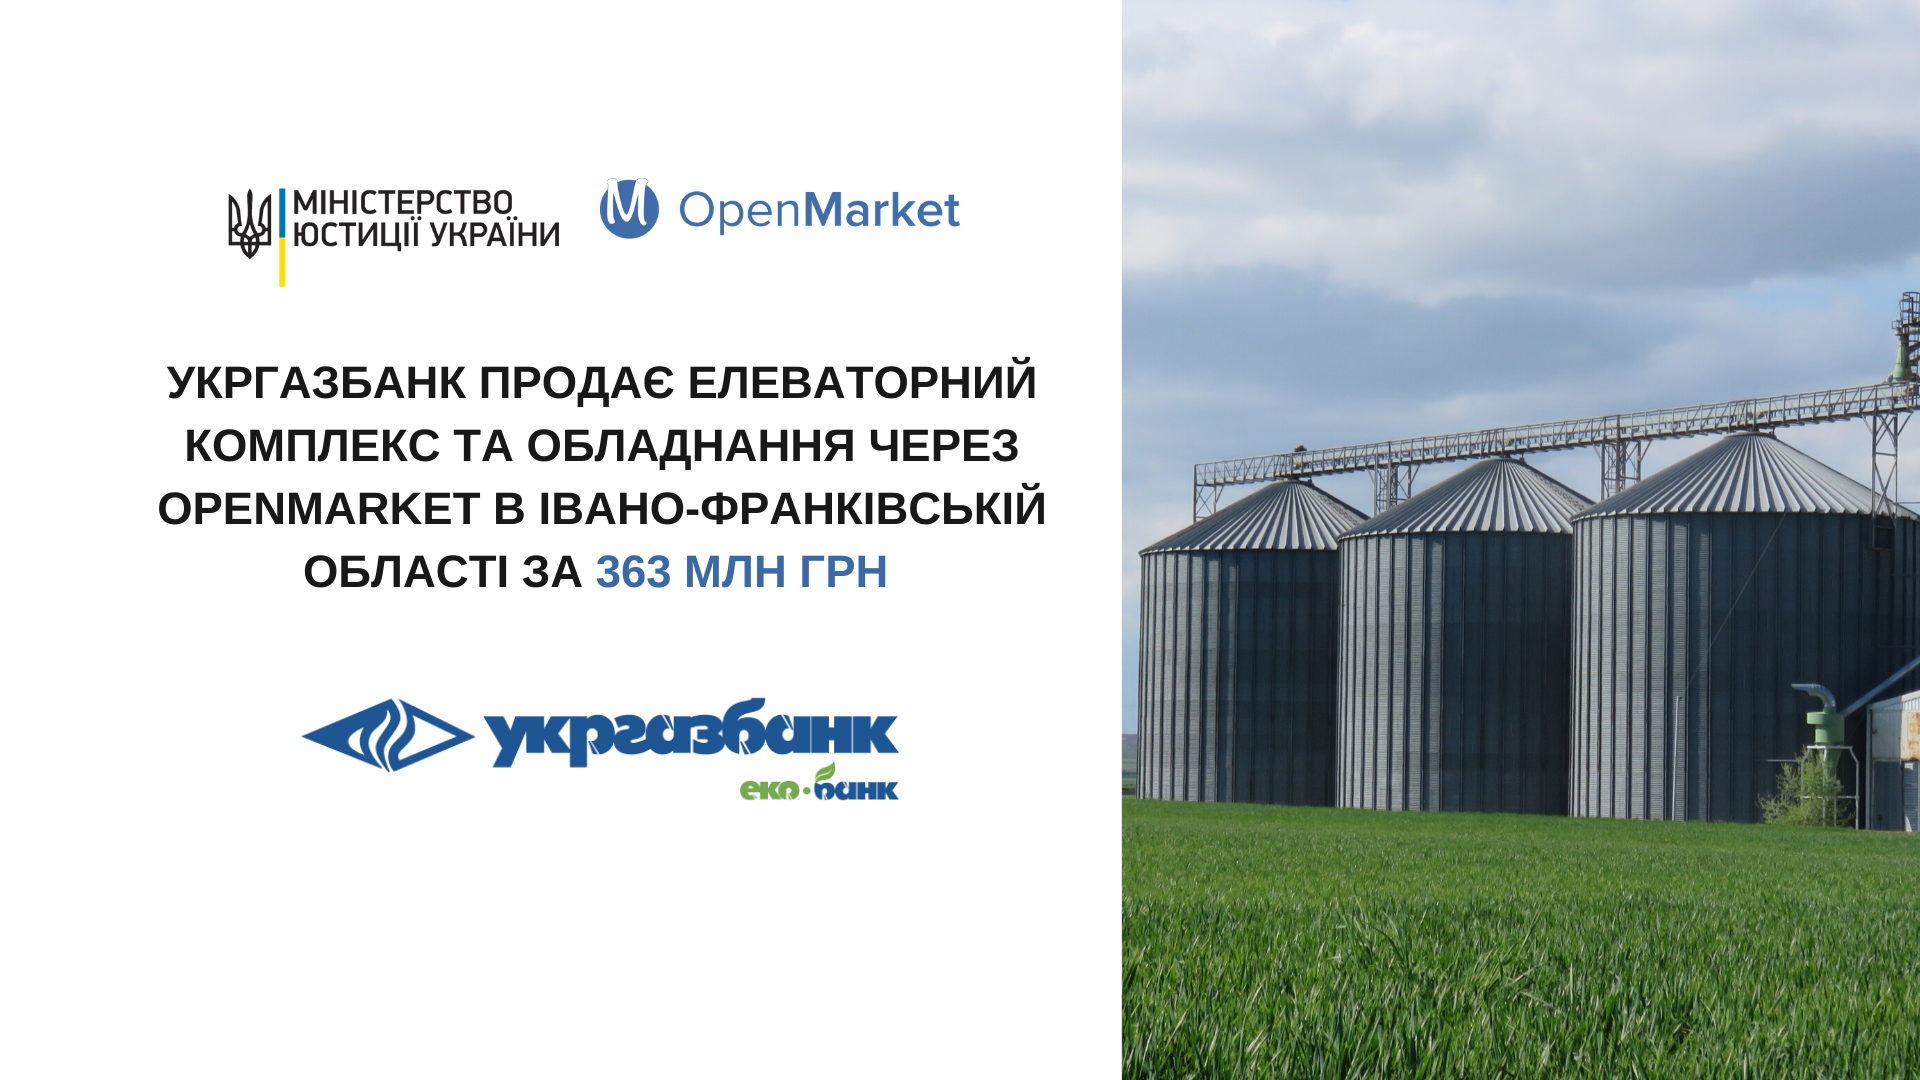 Укргазбанк продає елеваторний комплекс та обладнання через OpenMarket в Івано-Франківській області за 363 млн грн  - Фото